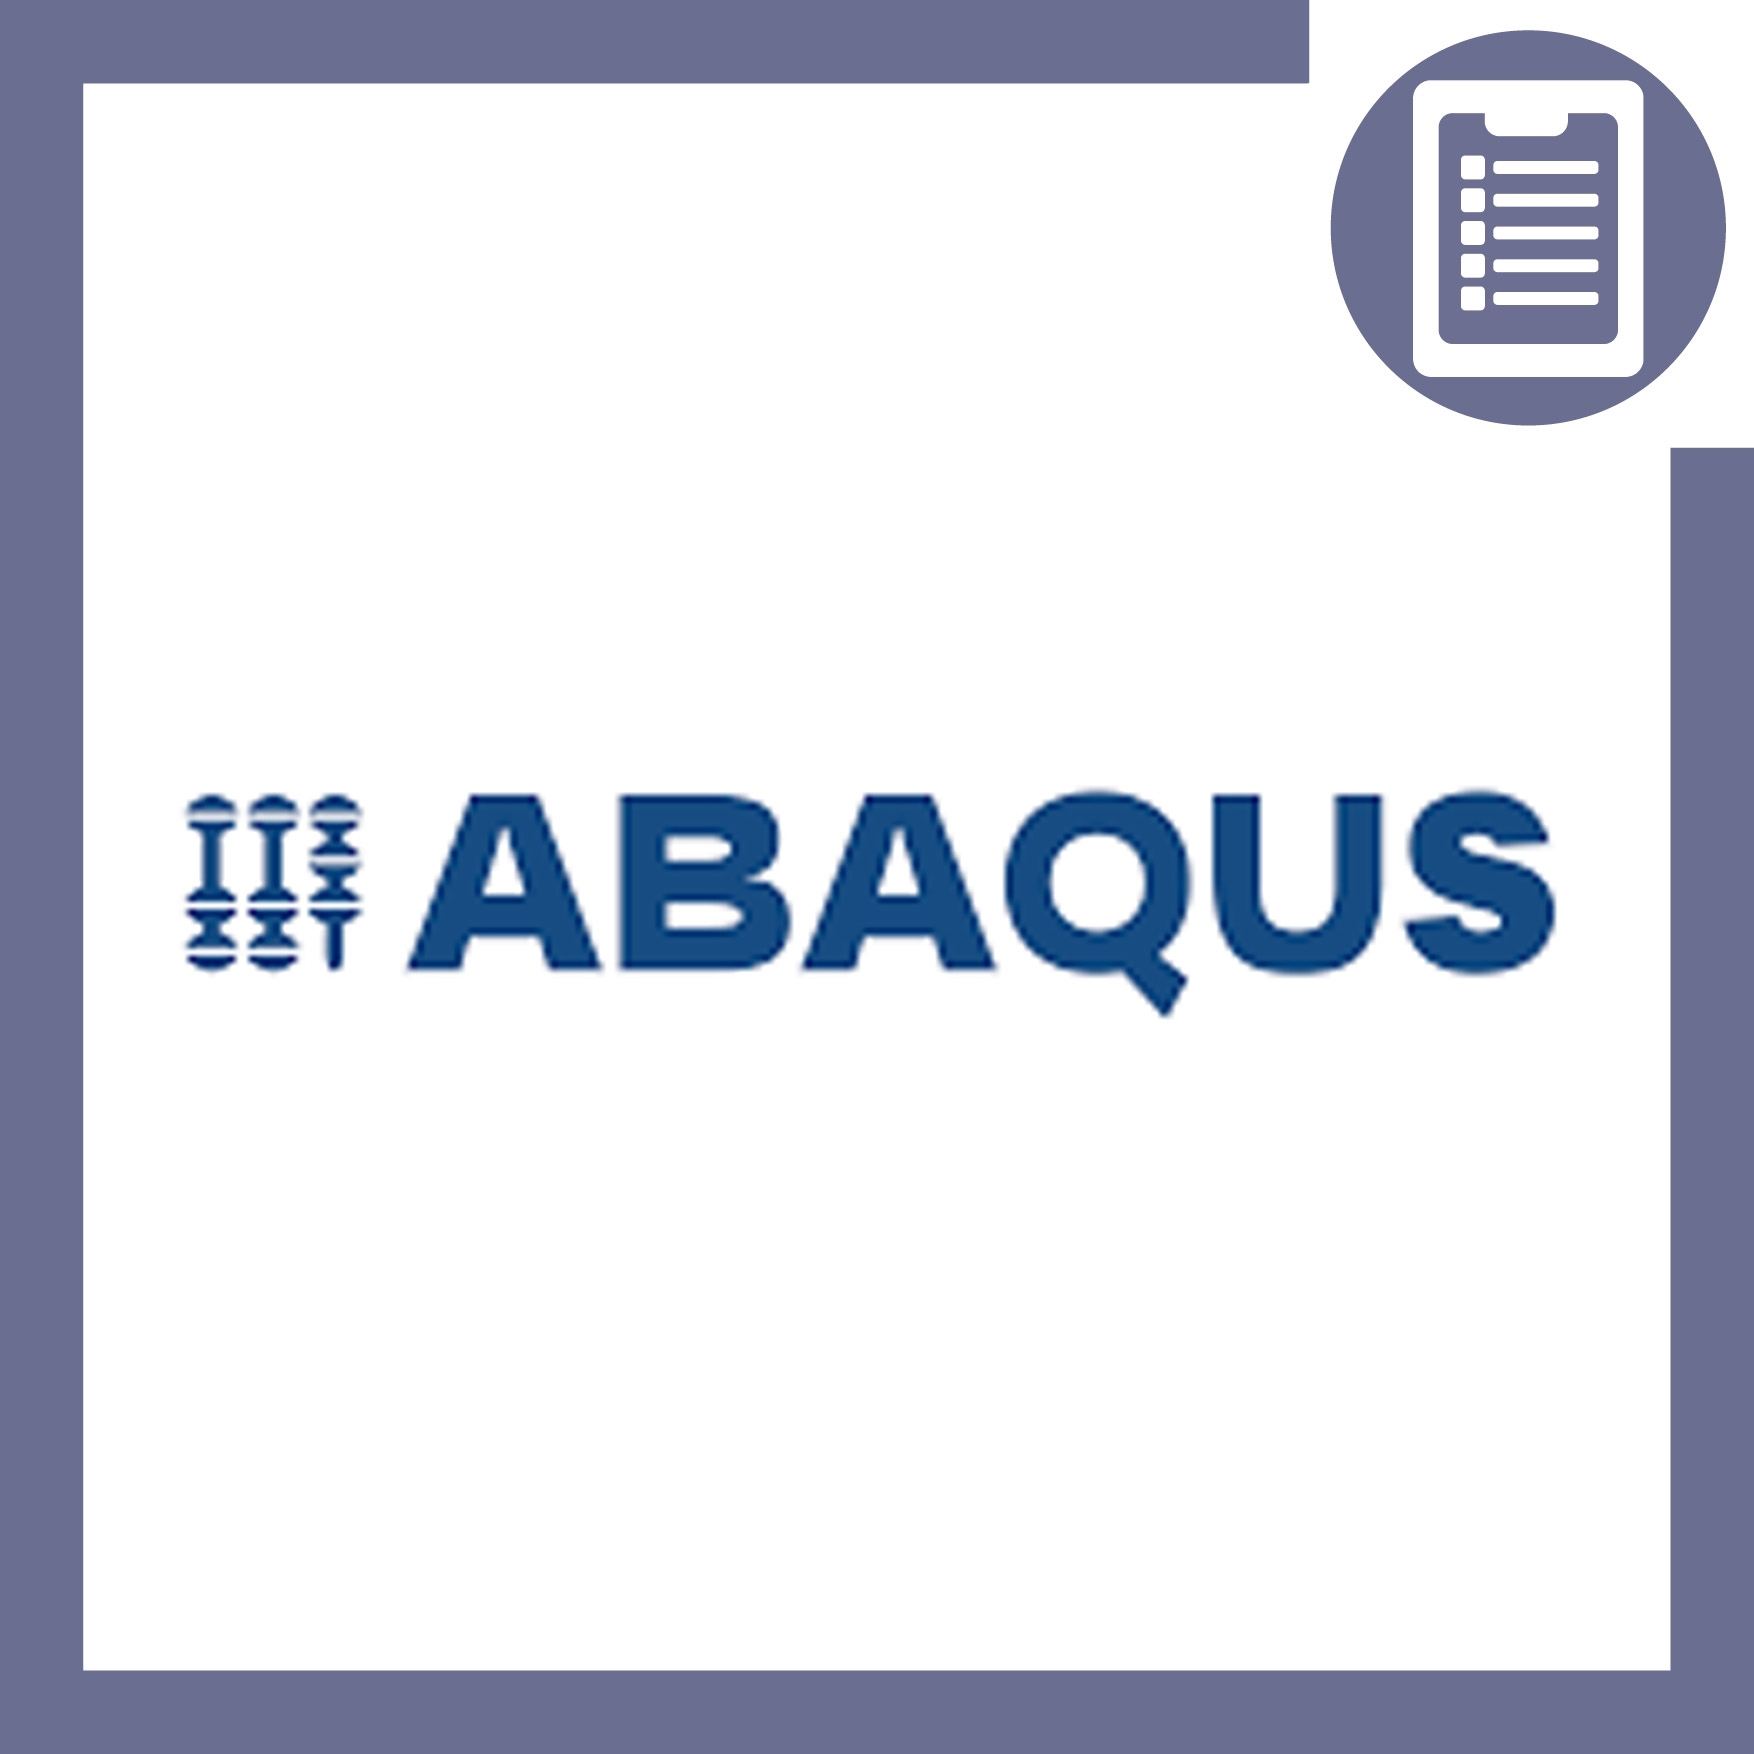 تصویر  آموزش ABAQUS مکانیک شکست (هوافضا)